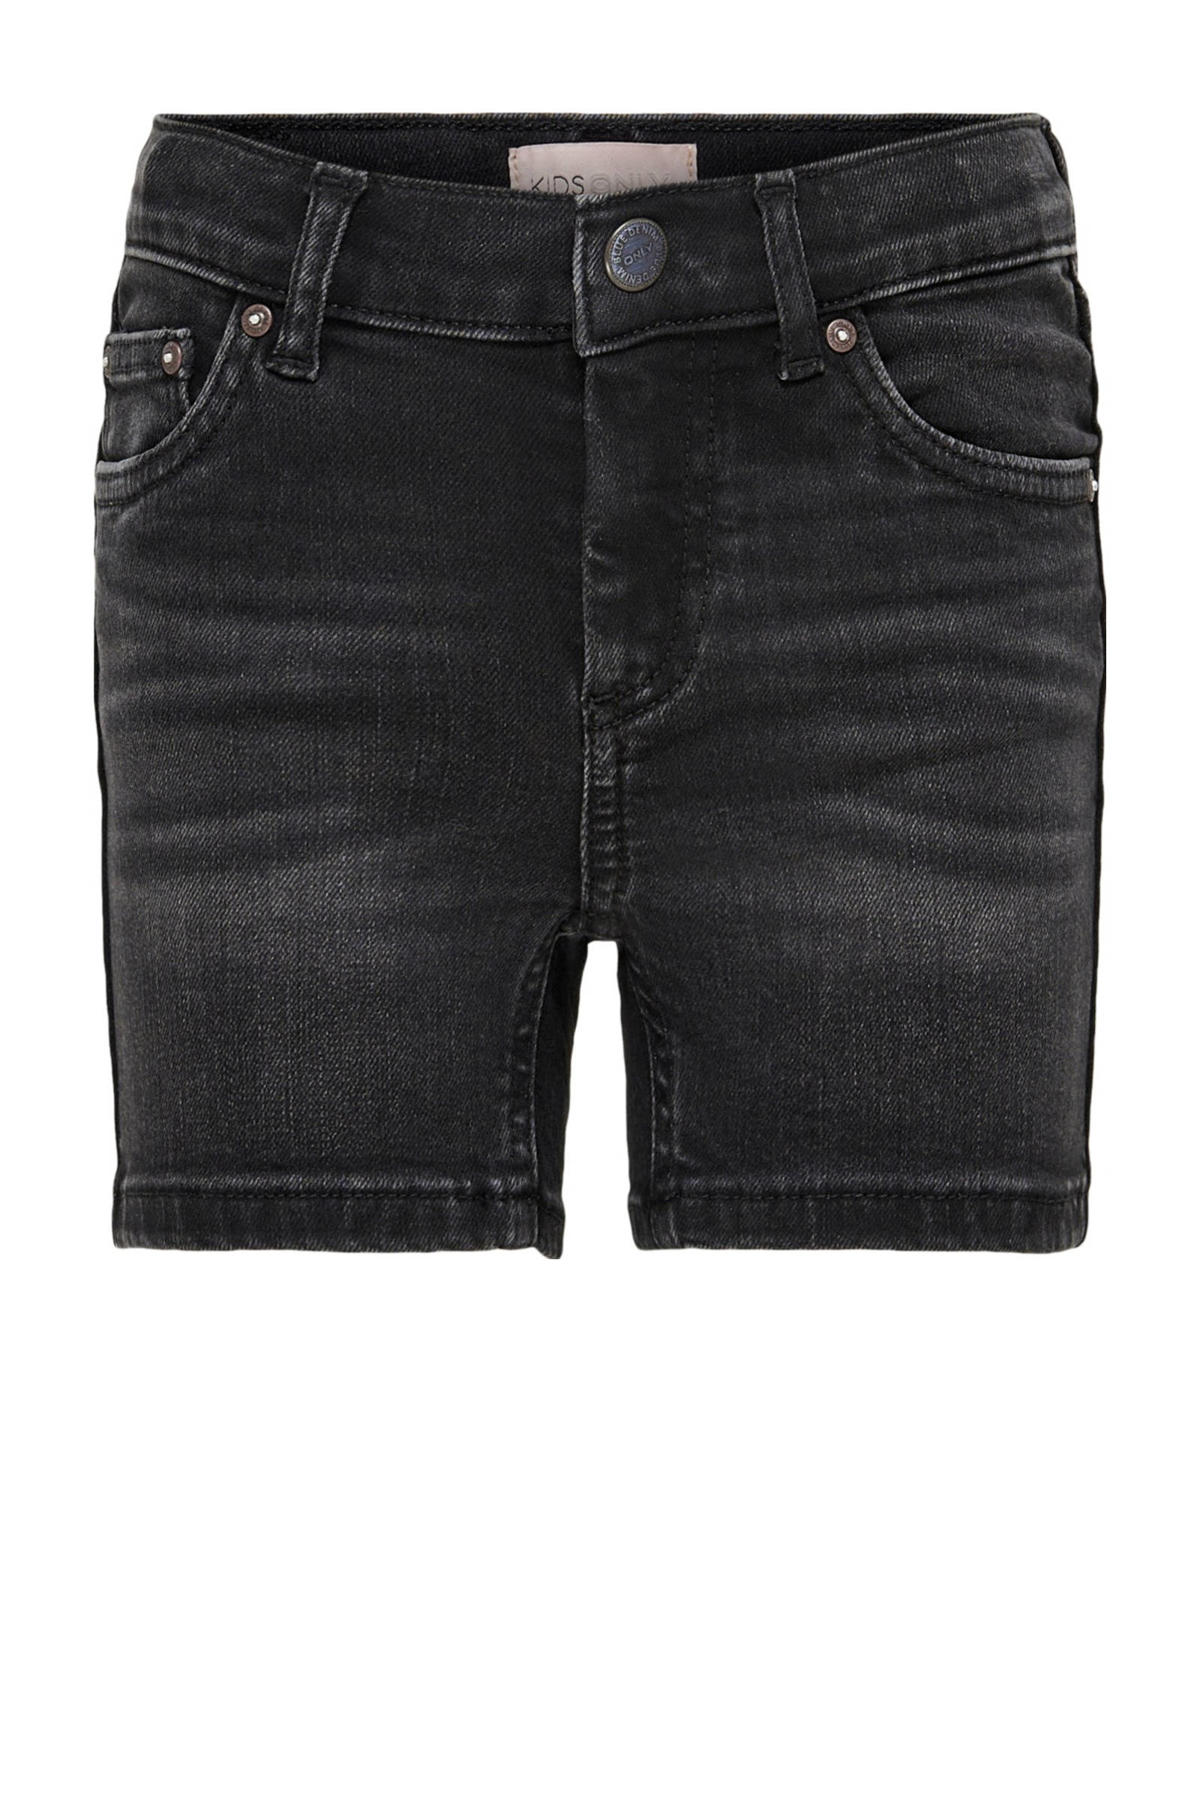 KIDS ONLY GIRL wehkamp fit KONBLUSH | regular denim short jeans black